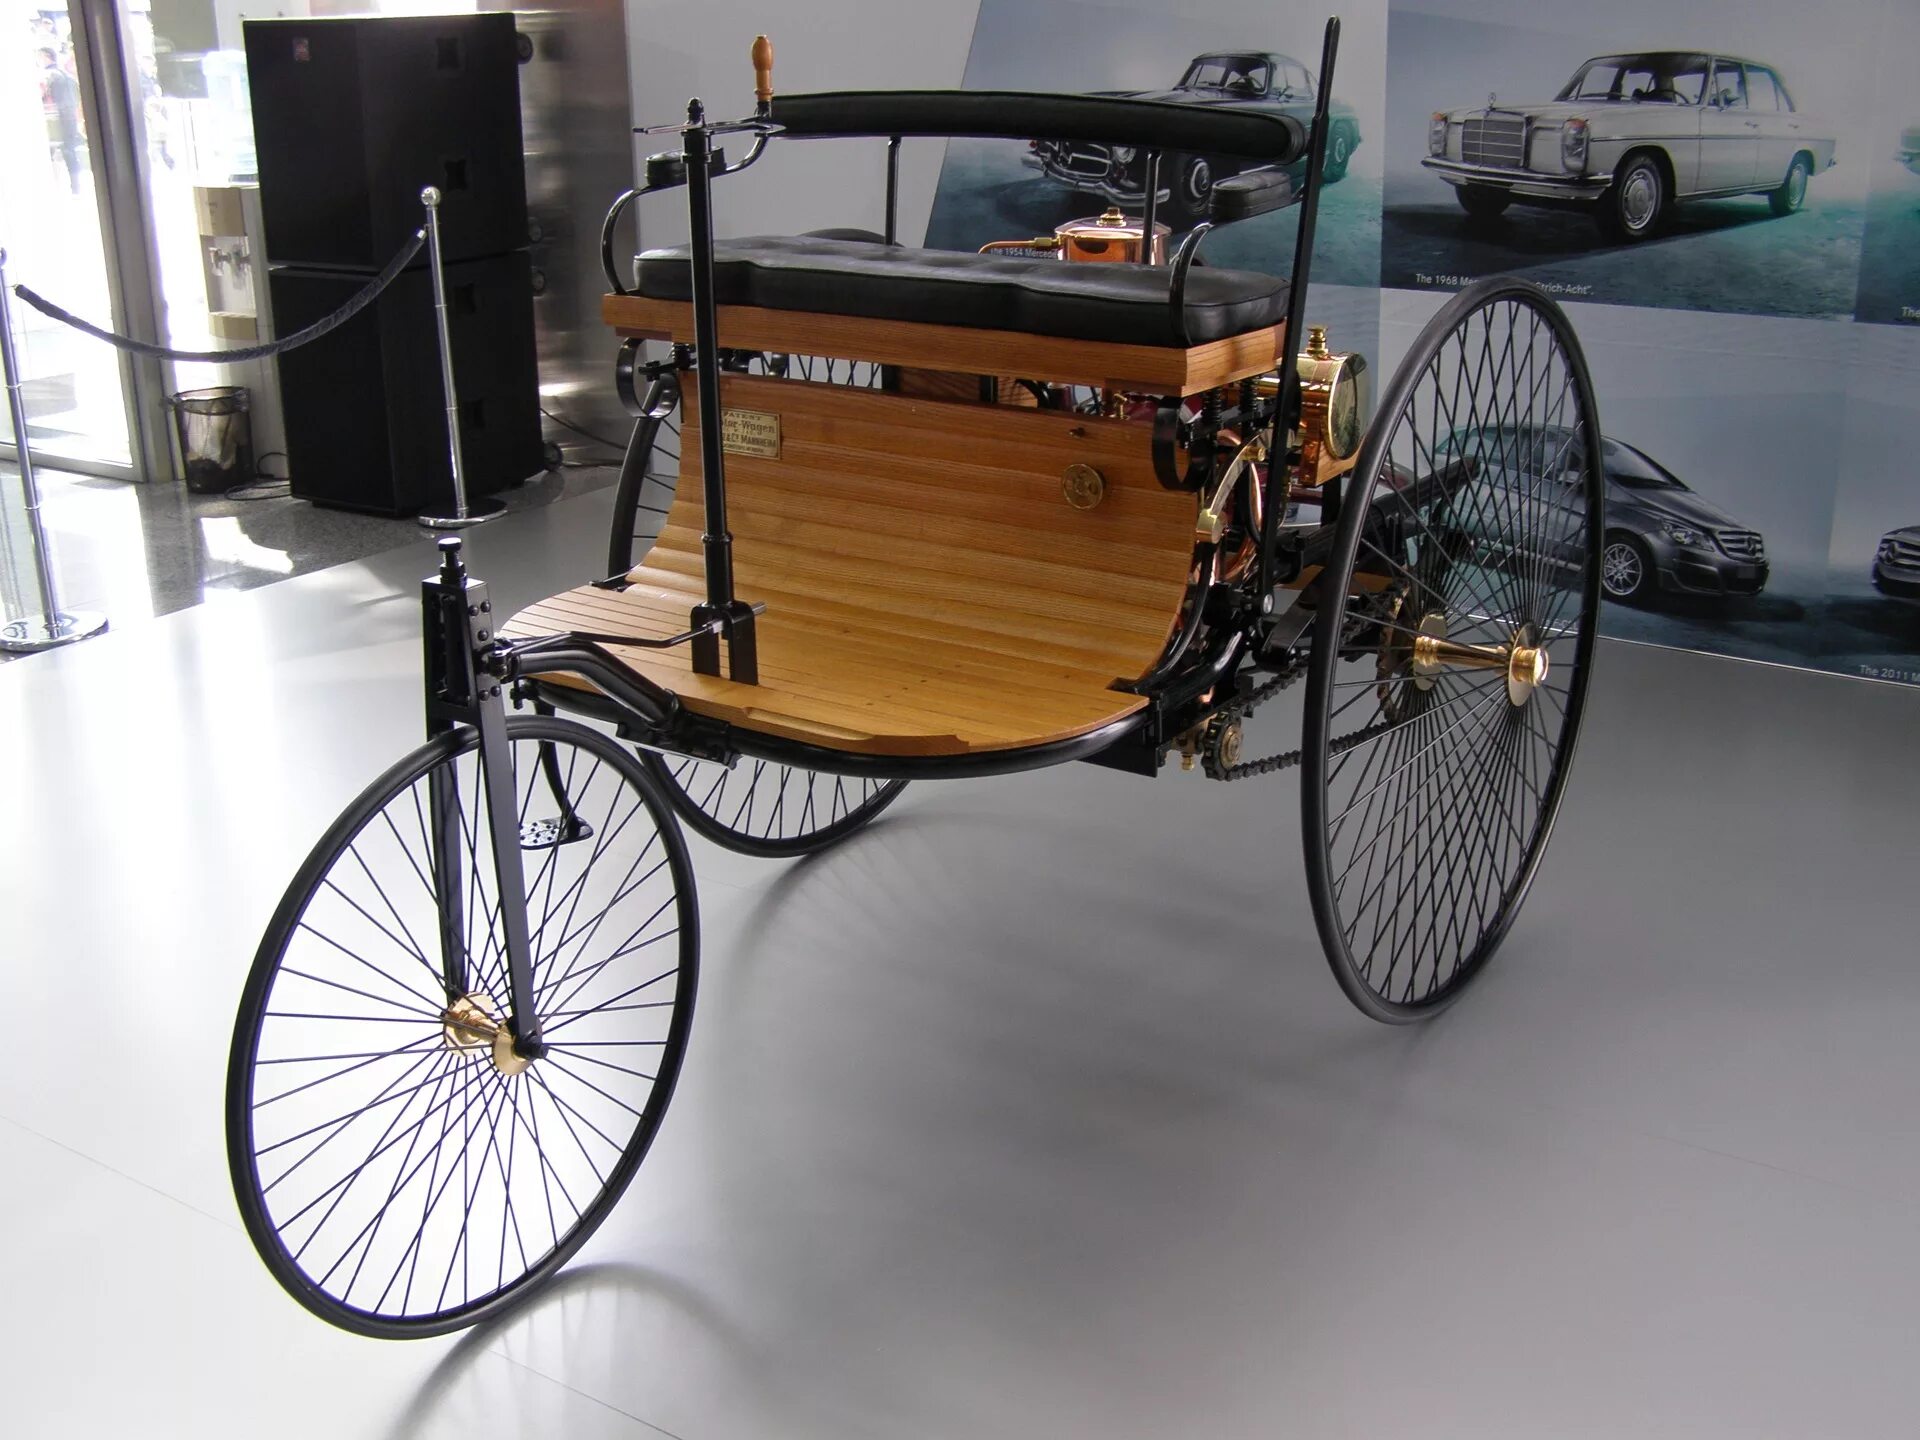 Benz Patent-Motorwagen 1886 года.